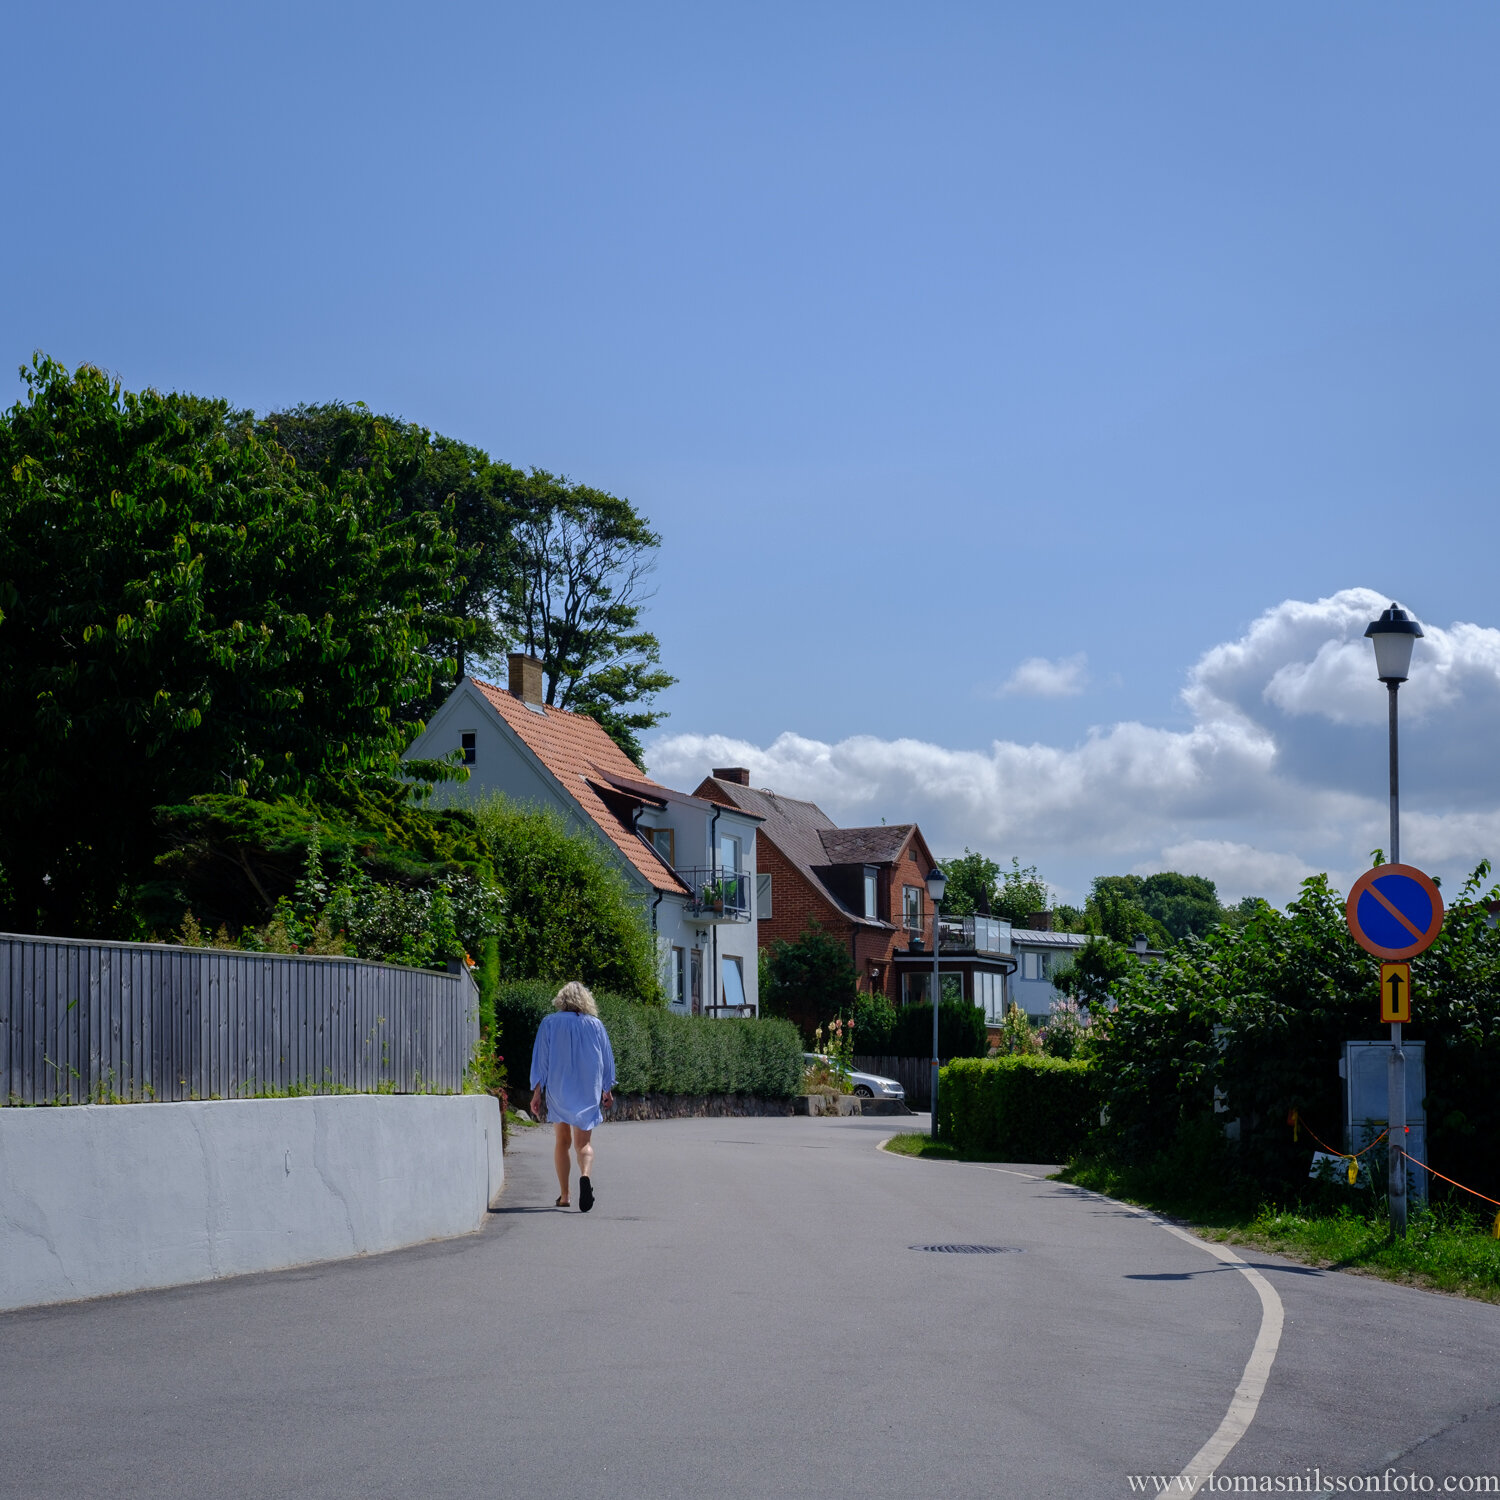 Day 199 - July 18: A walk in a seaside village